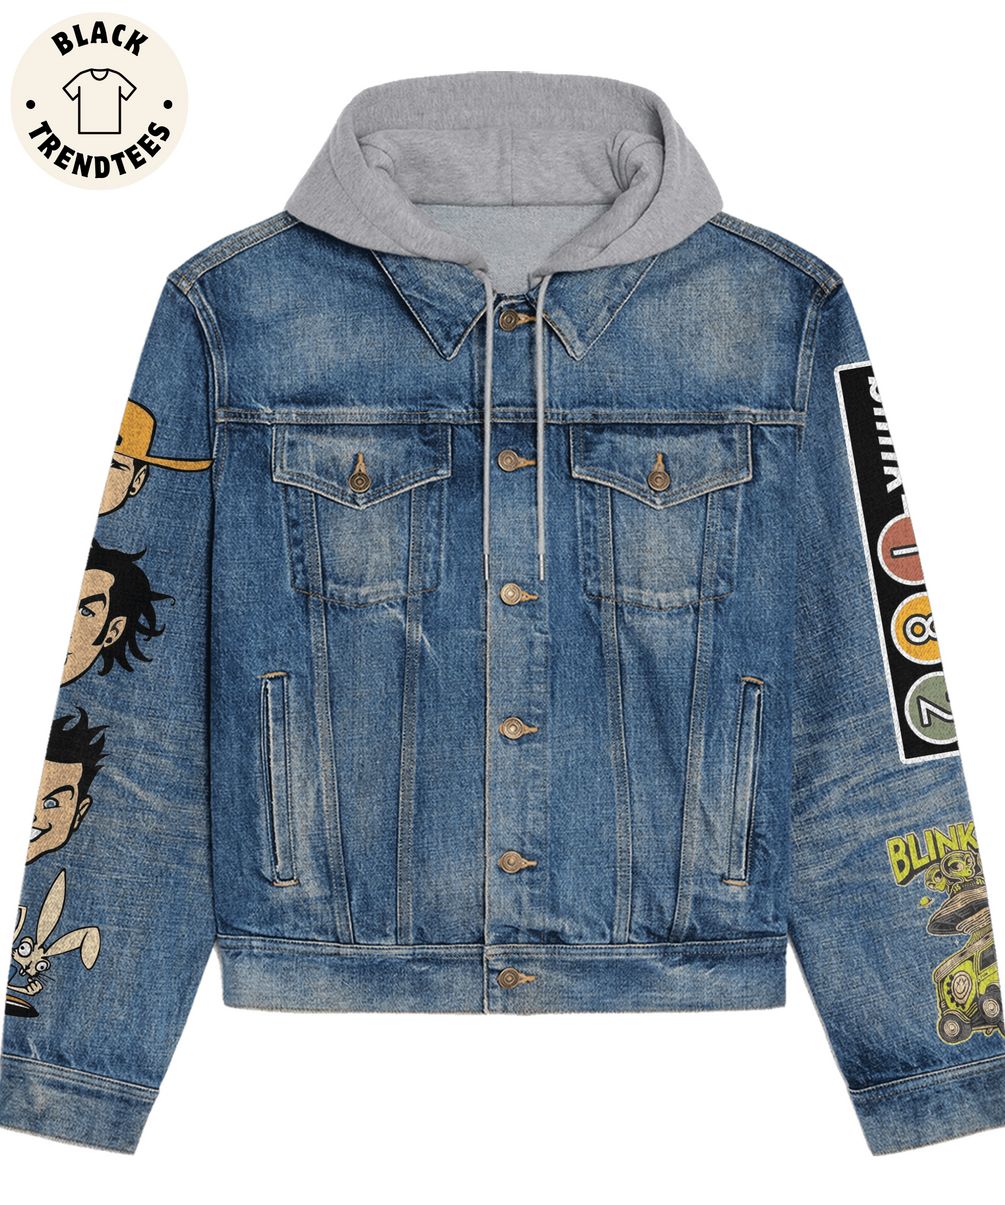 Blink 182 One More Time Design Hooded Denim Jacket